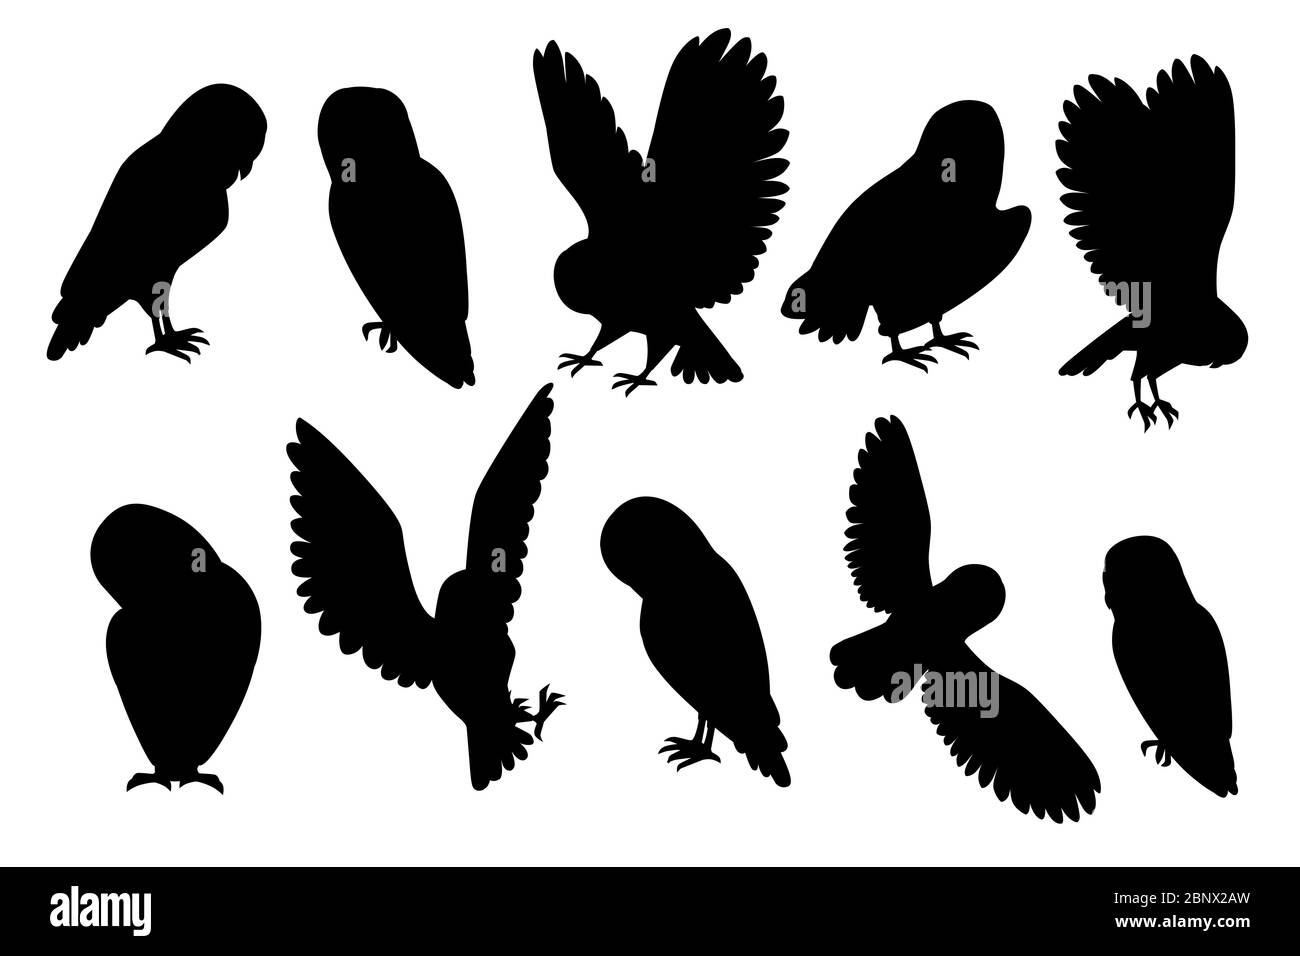 Schwarze Silhouette Satz von niedlichen Scheune Eule (tyto alba) Cartoon wilden Wald Vogel Tier Design flache Vektor-Illustration isoliert auf weißem Hintergrund Stock Vektor